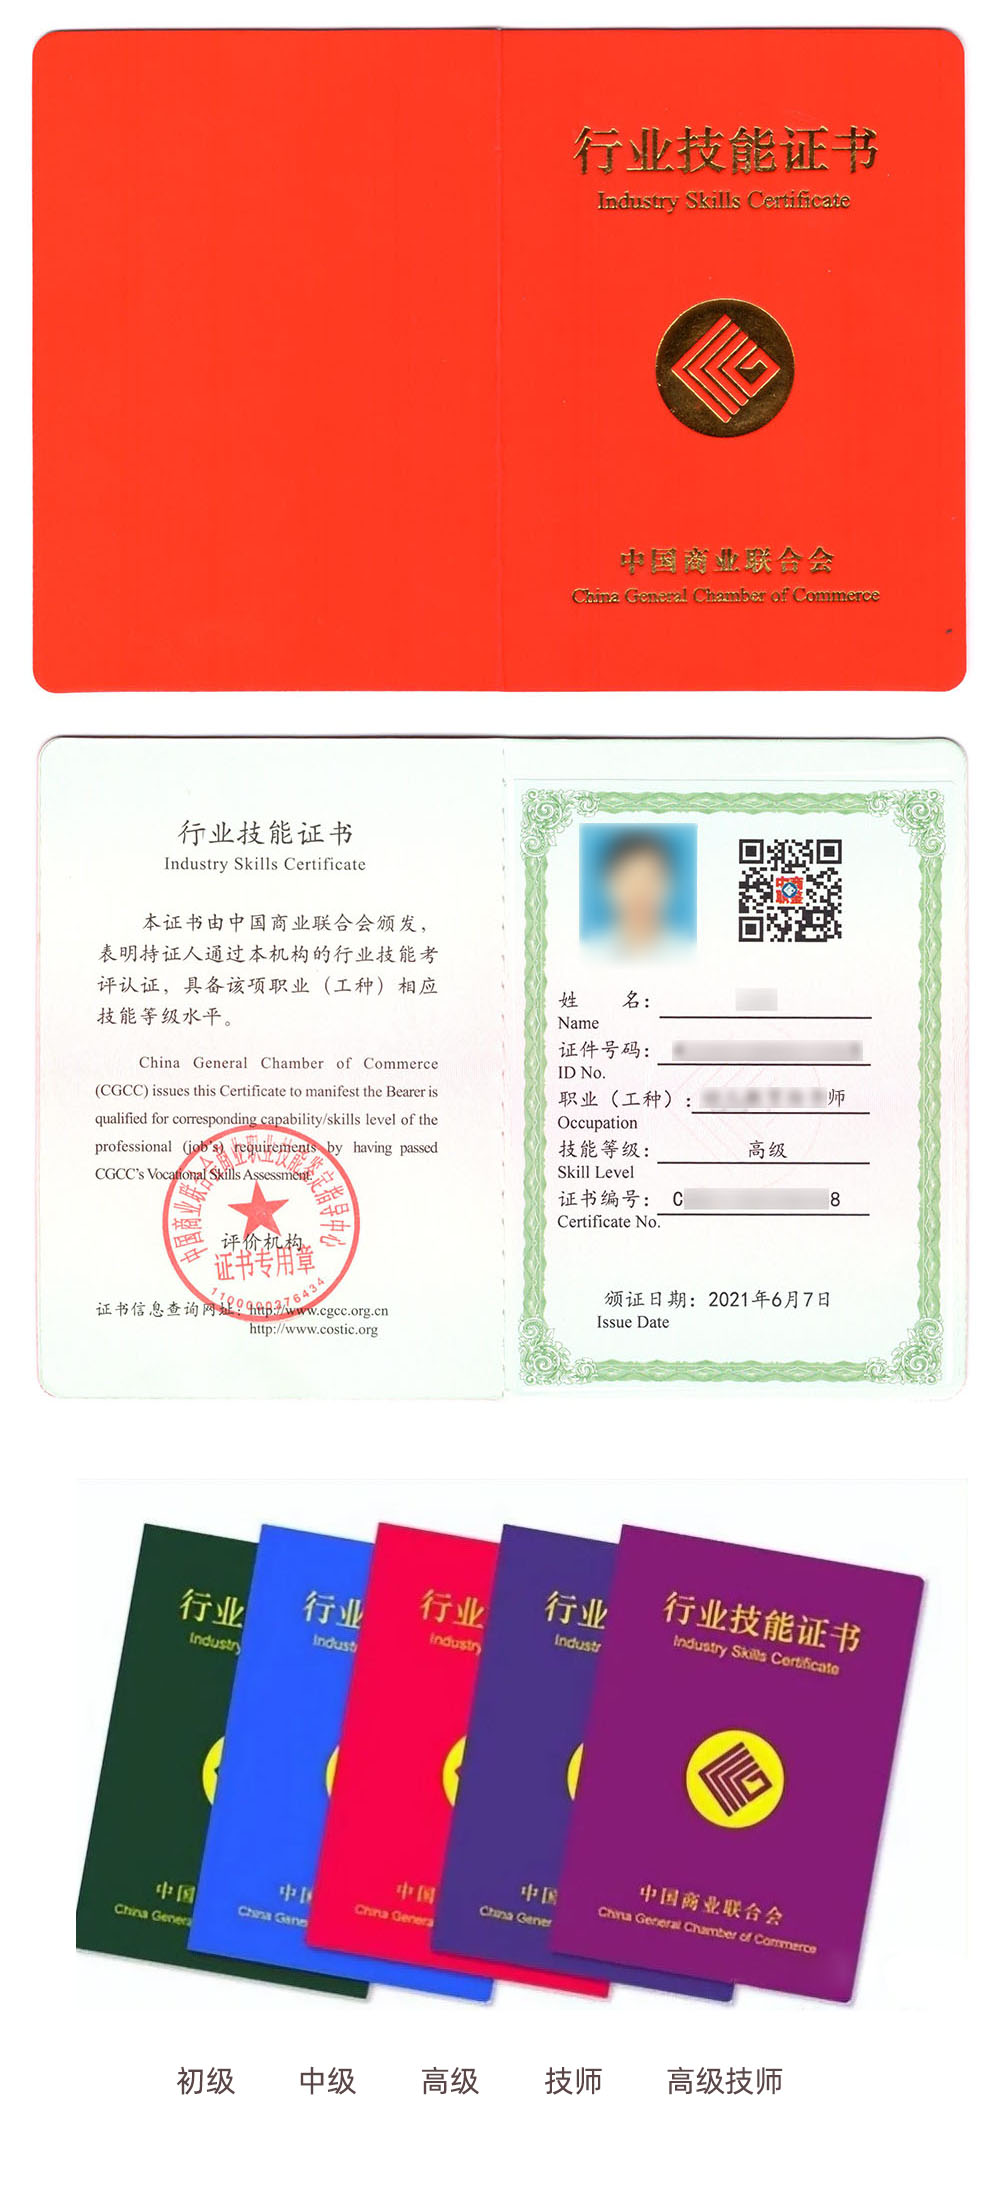 中国商业联合会商业职业技能鉴定中心 行业技能证书 婚姻家庭咨询师证证书样本